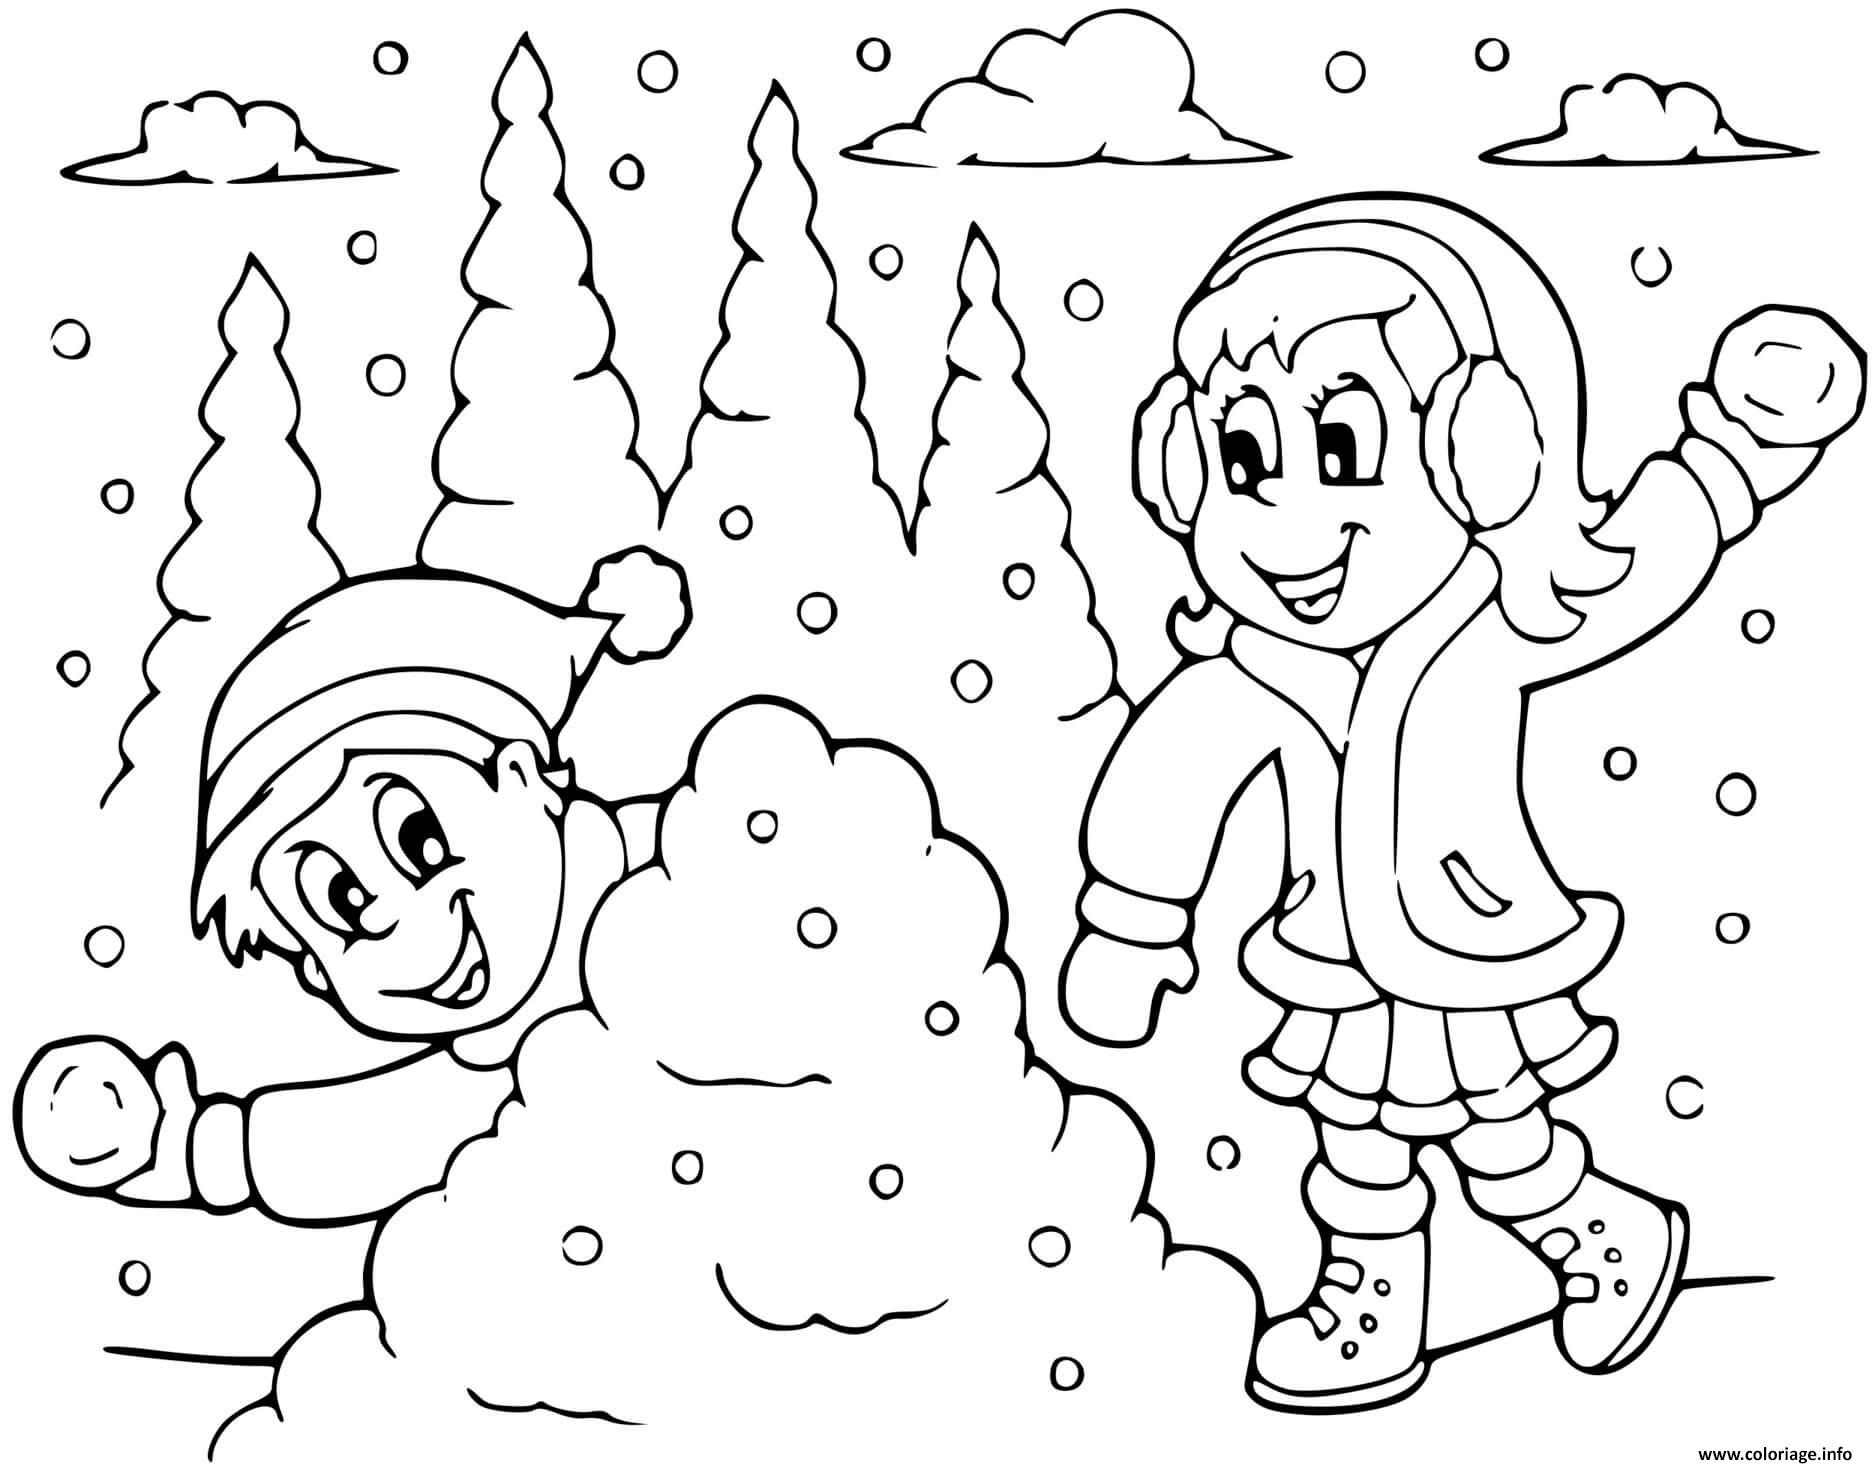 Dessin bataille de neige entre fille et garcon hiver Coloriage Gratuit à Imprimer